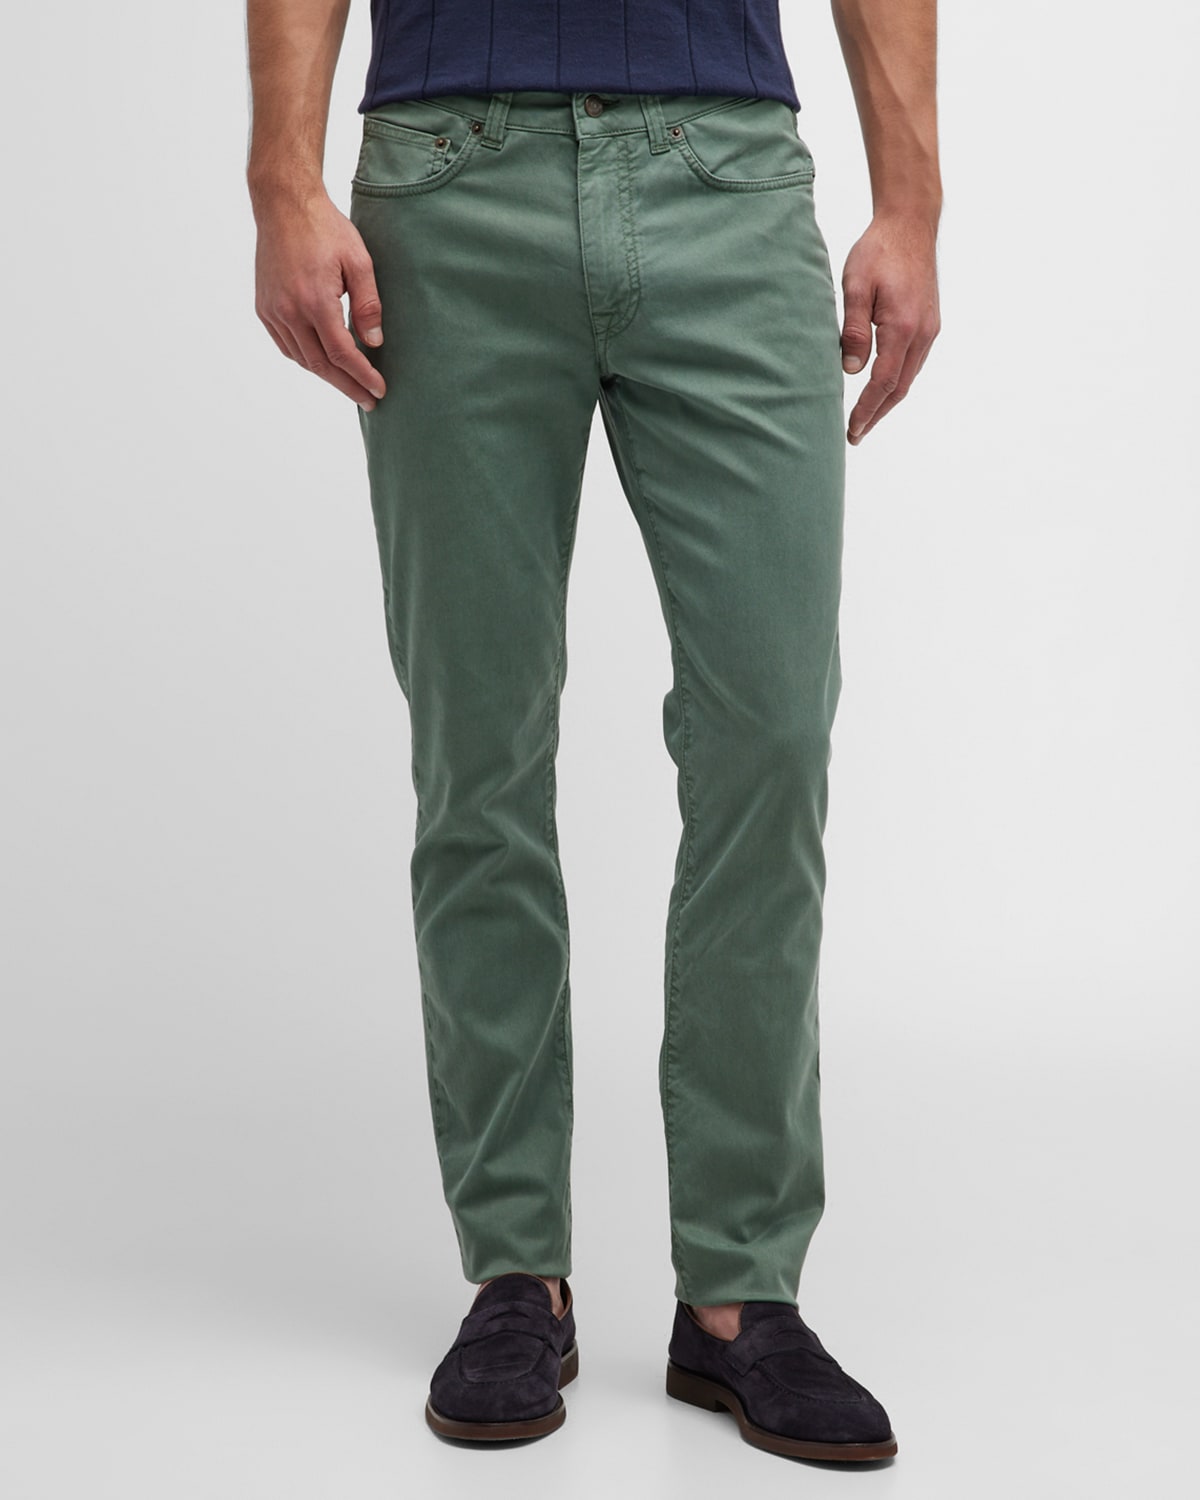 Boglioli Men's Cotton-silk Twill Trousers In Olive Green